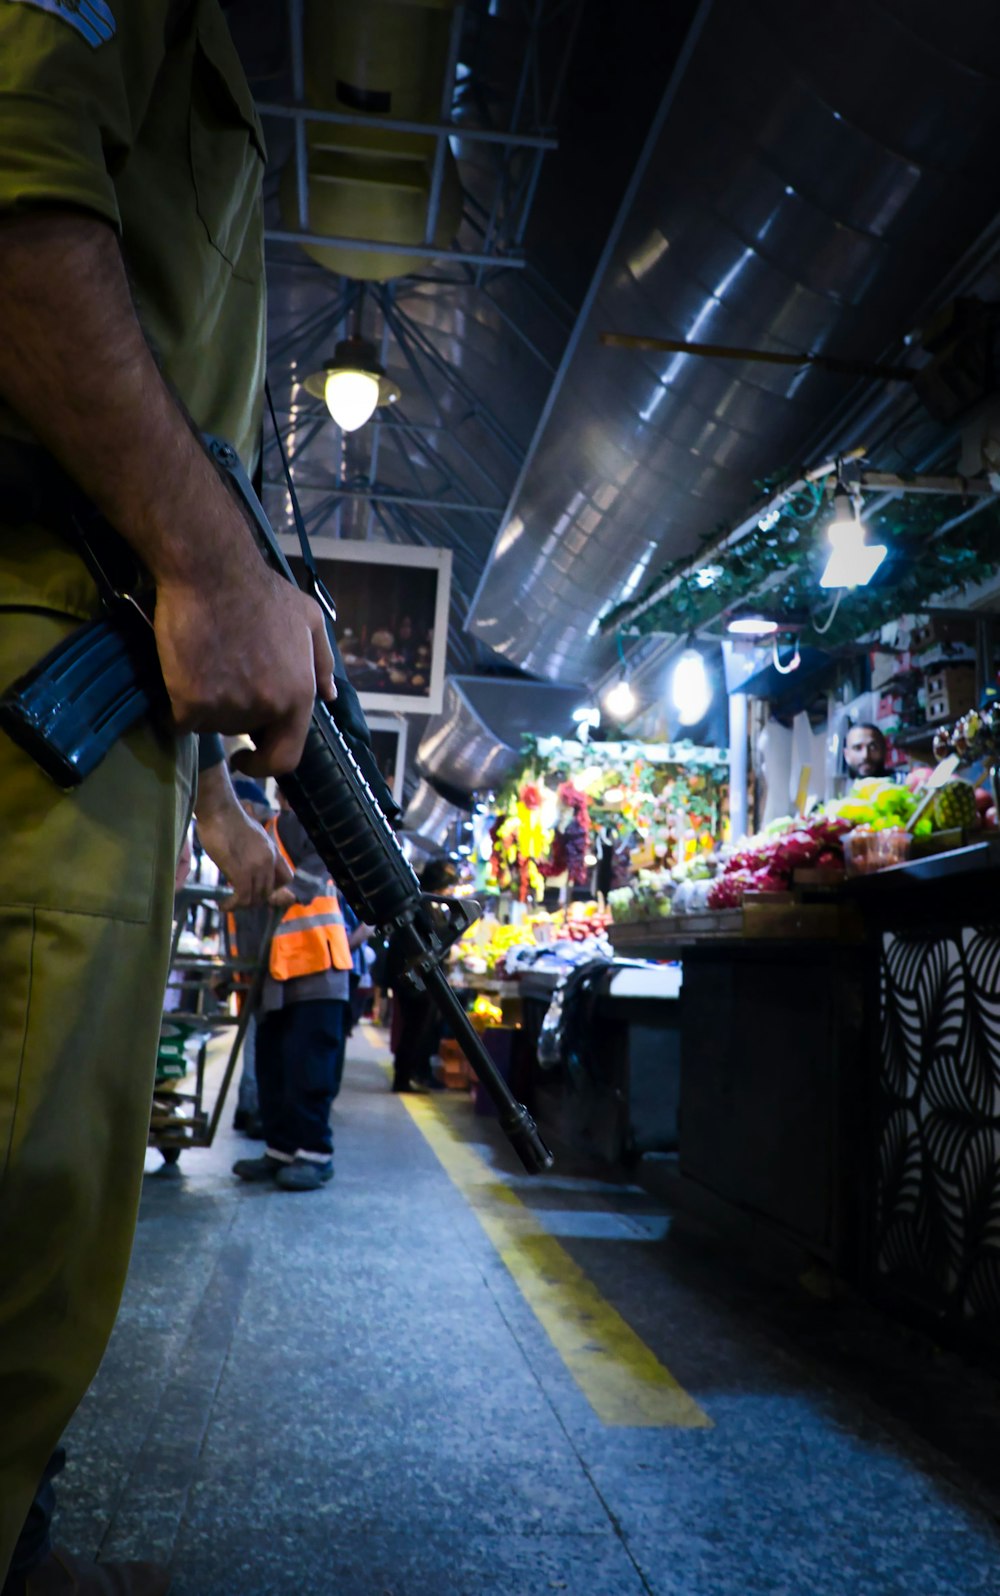 a man holding a gun in a market